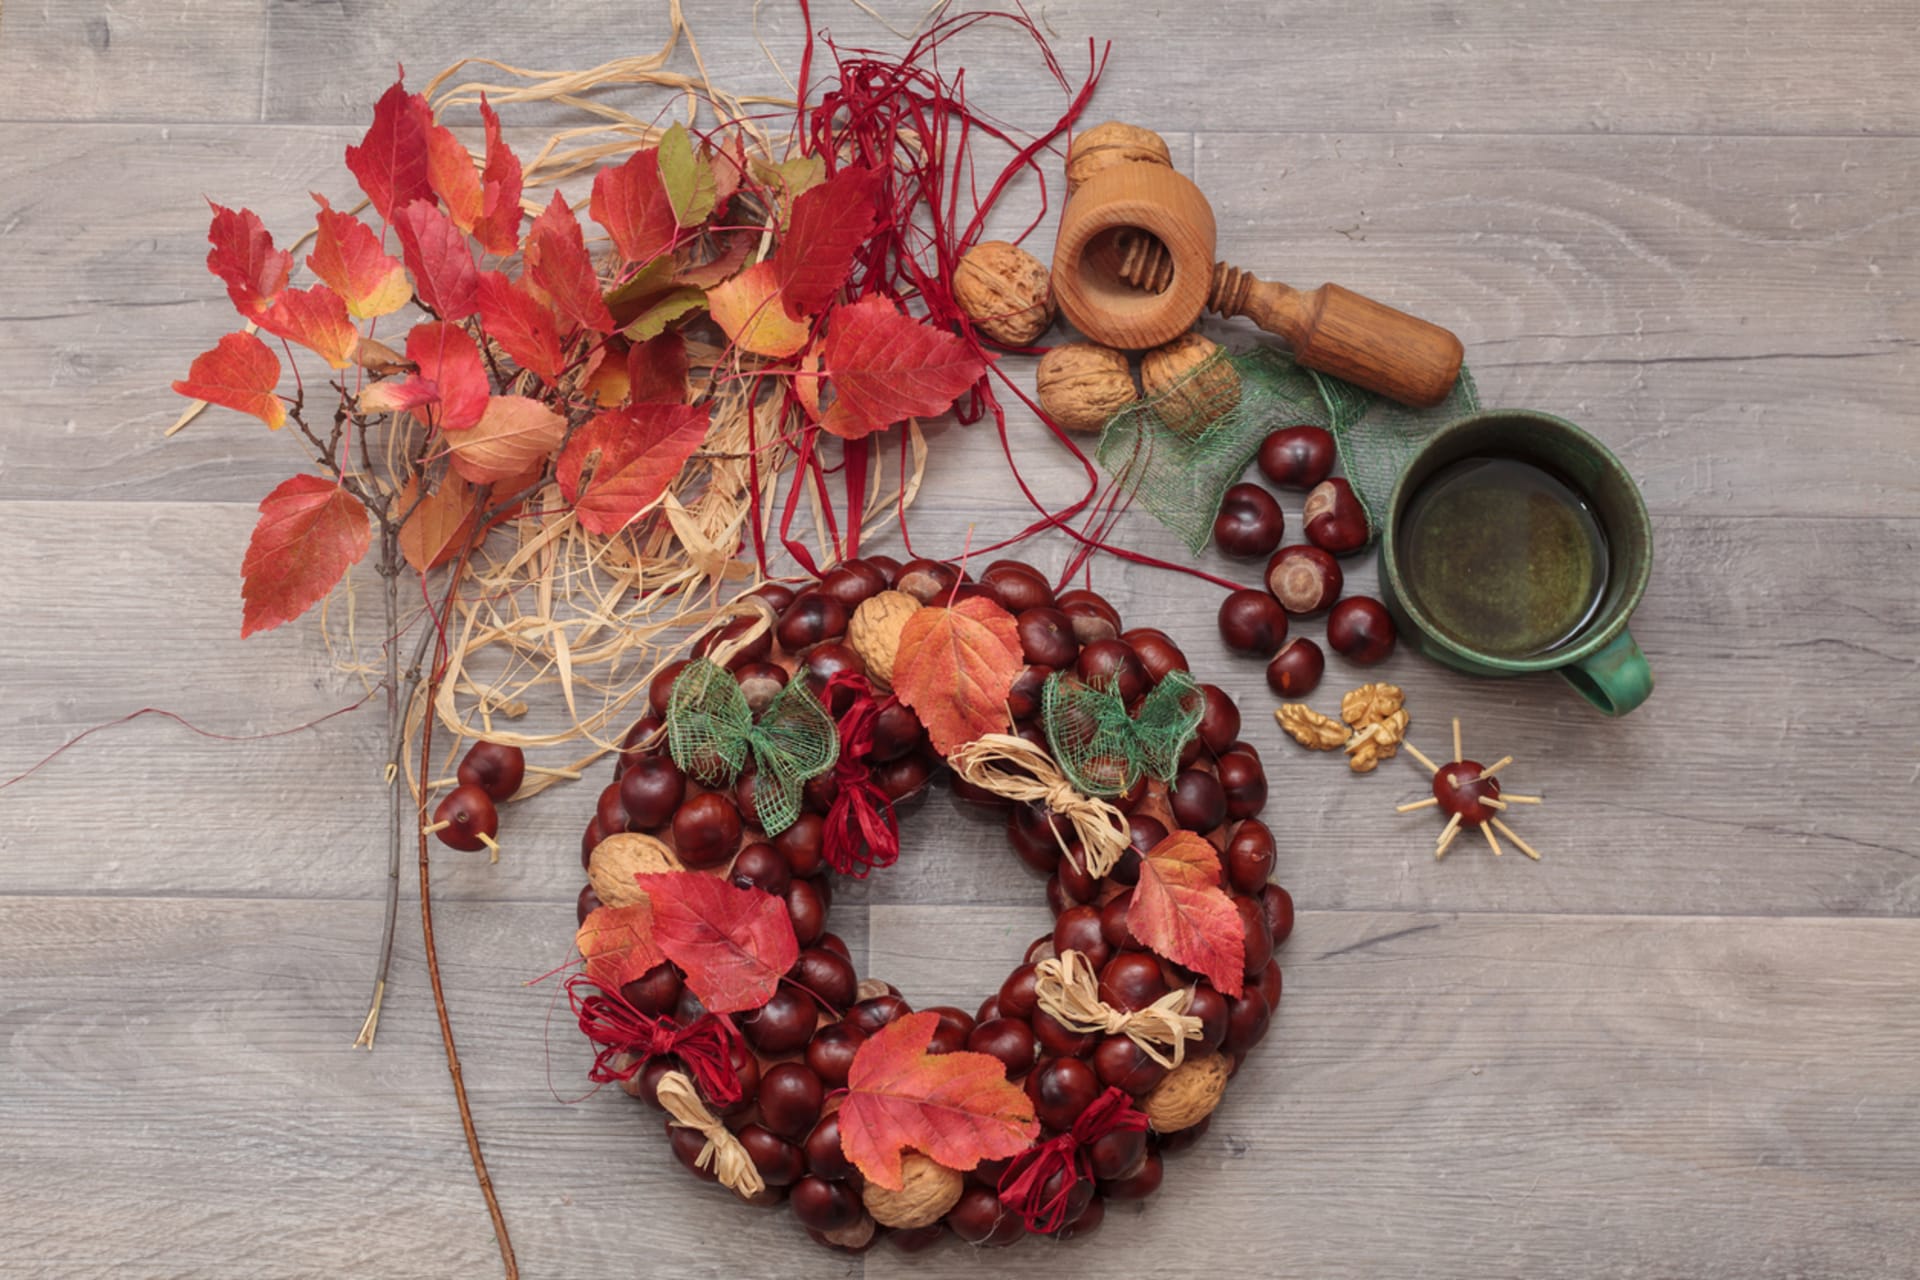 Podzimní věnec z kaštanů, ořechů a barevného listí